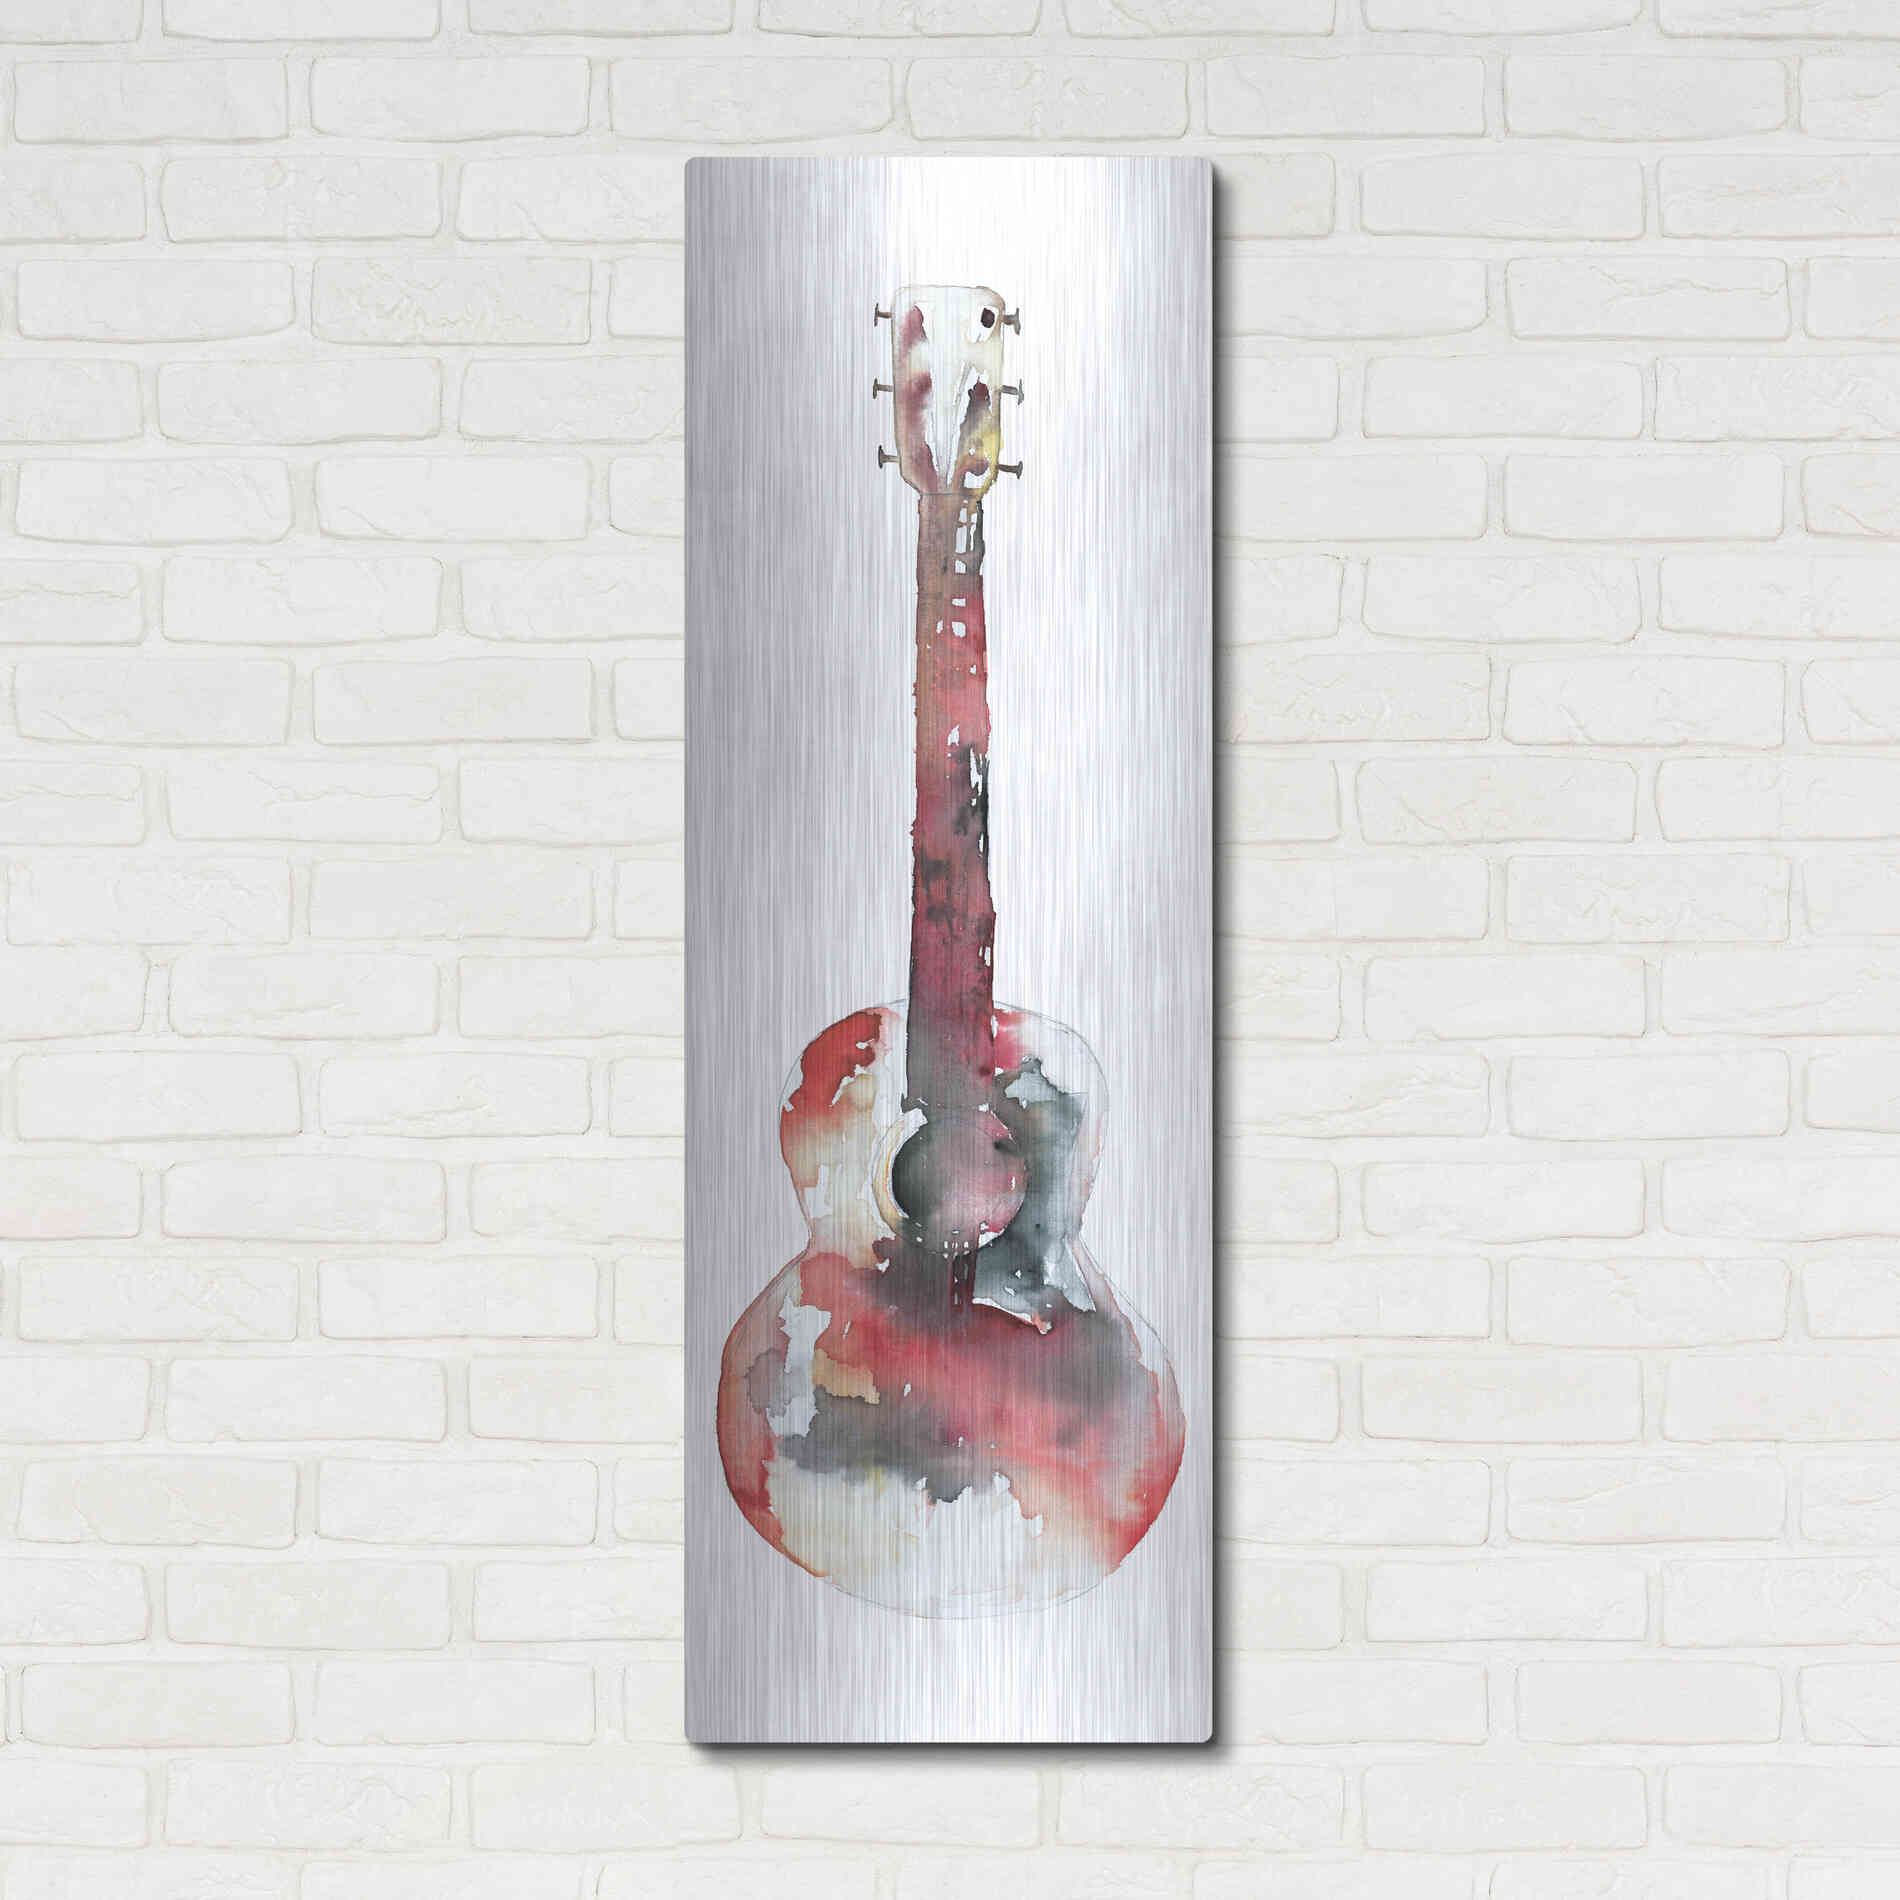 Luxe Metal Art 'Red Rocker' by Cloverfield & Co, Metal Wall Art,16x48